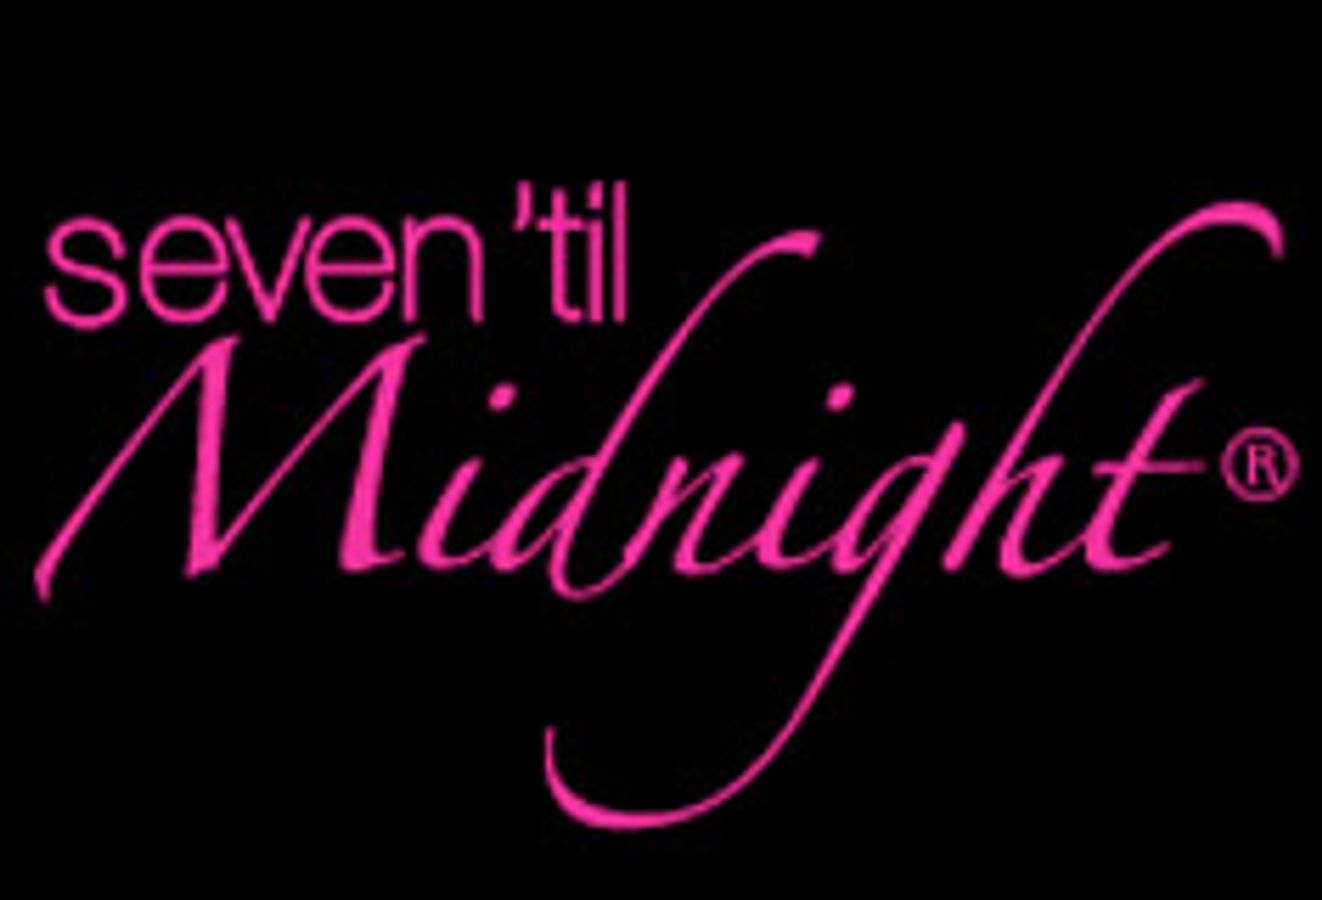 Seven 'til Midnight